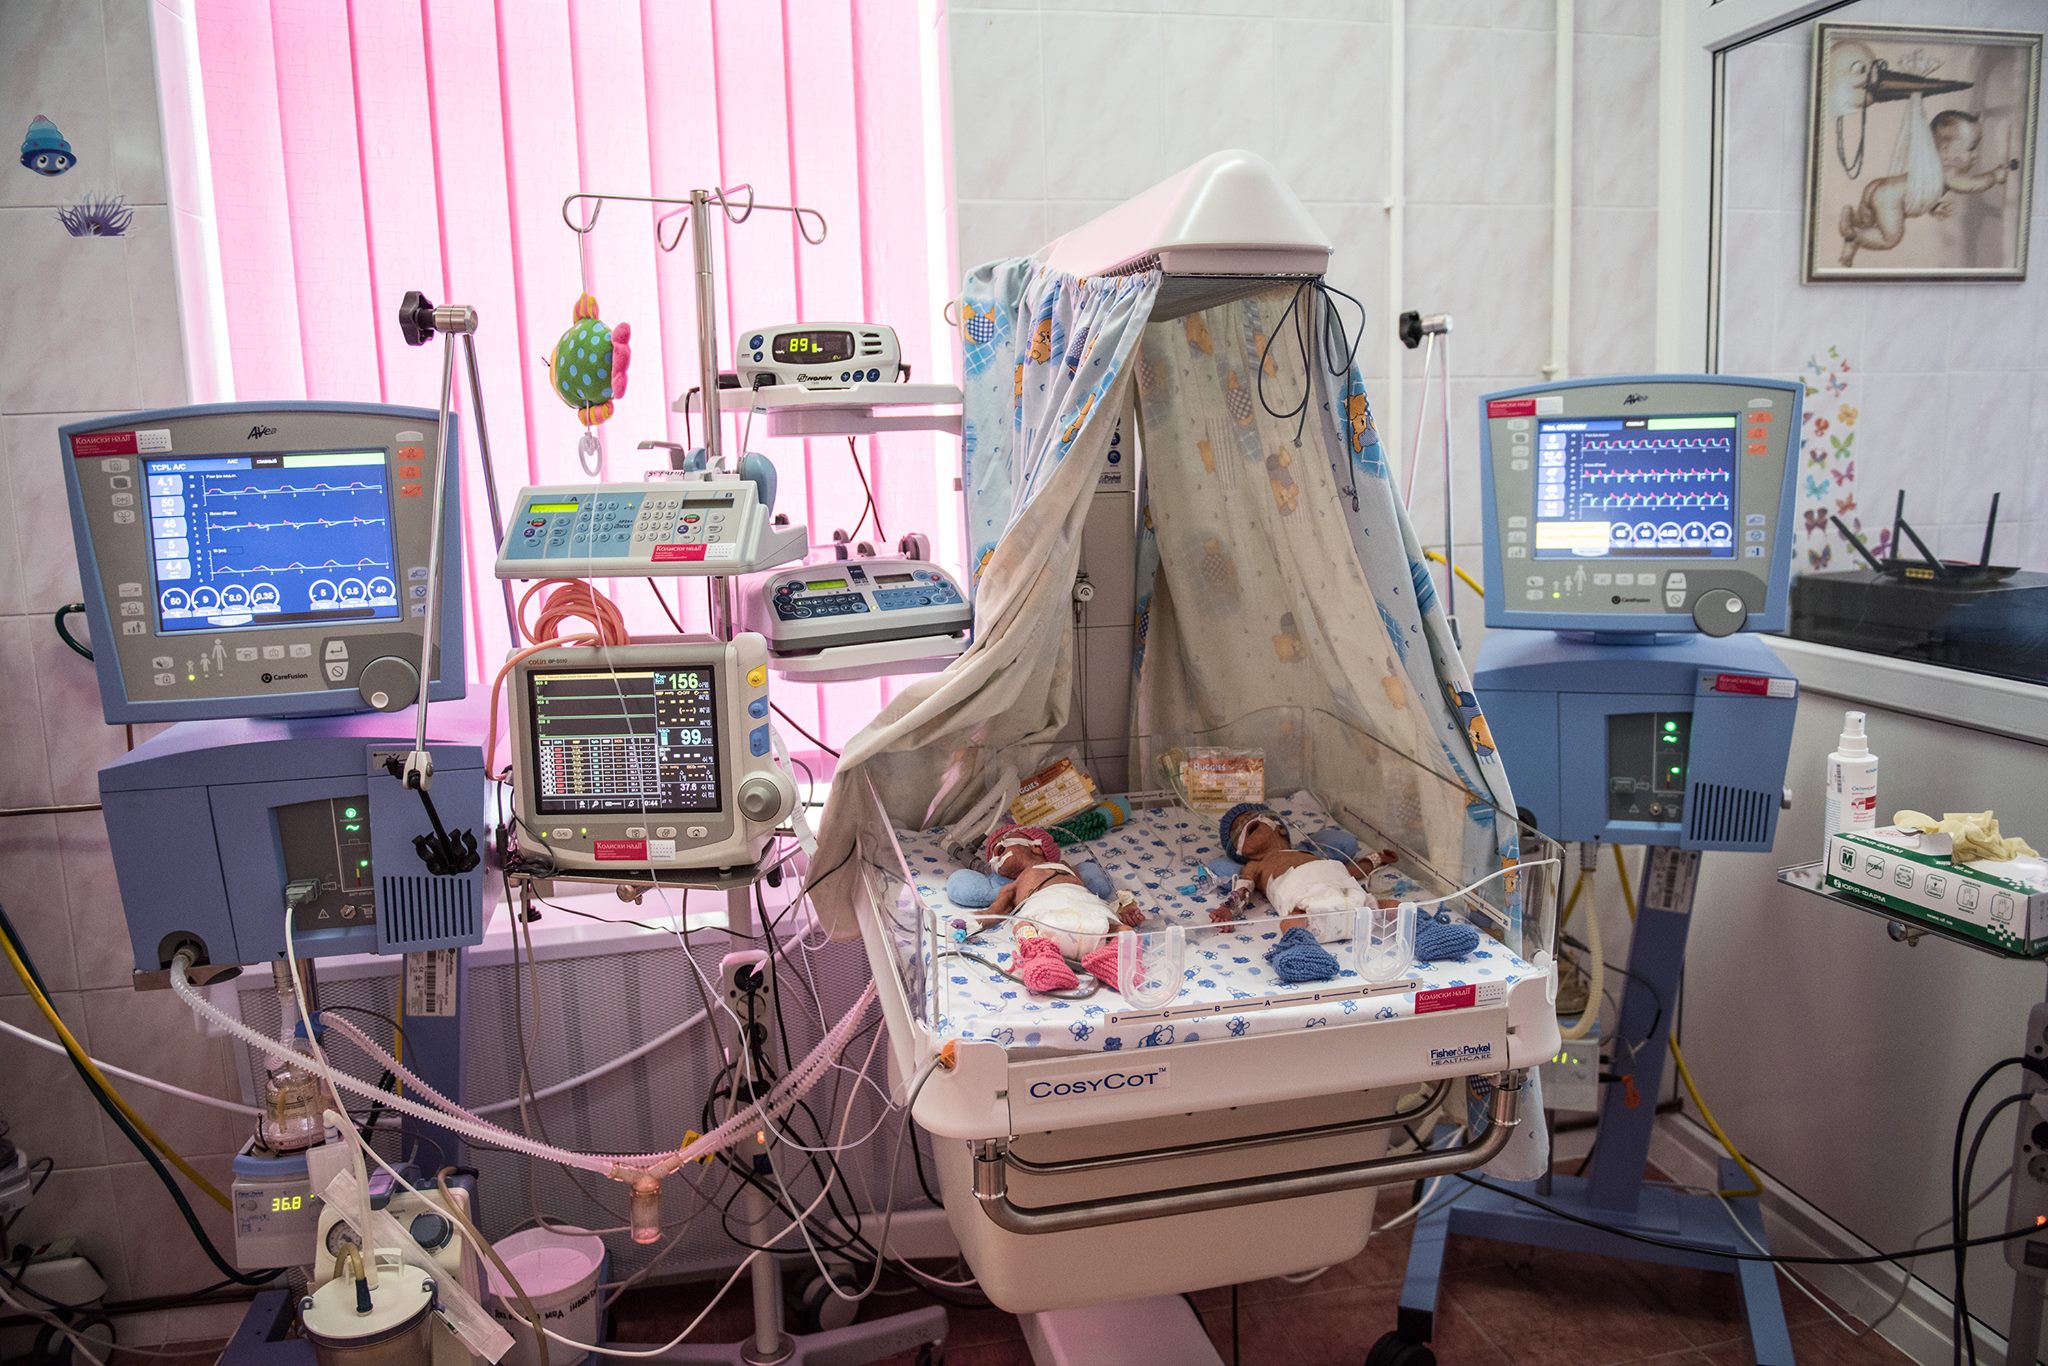 The Cradles of Hope neonatal centre in Vinnytsia